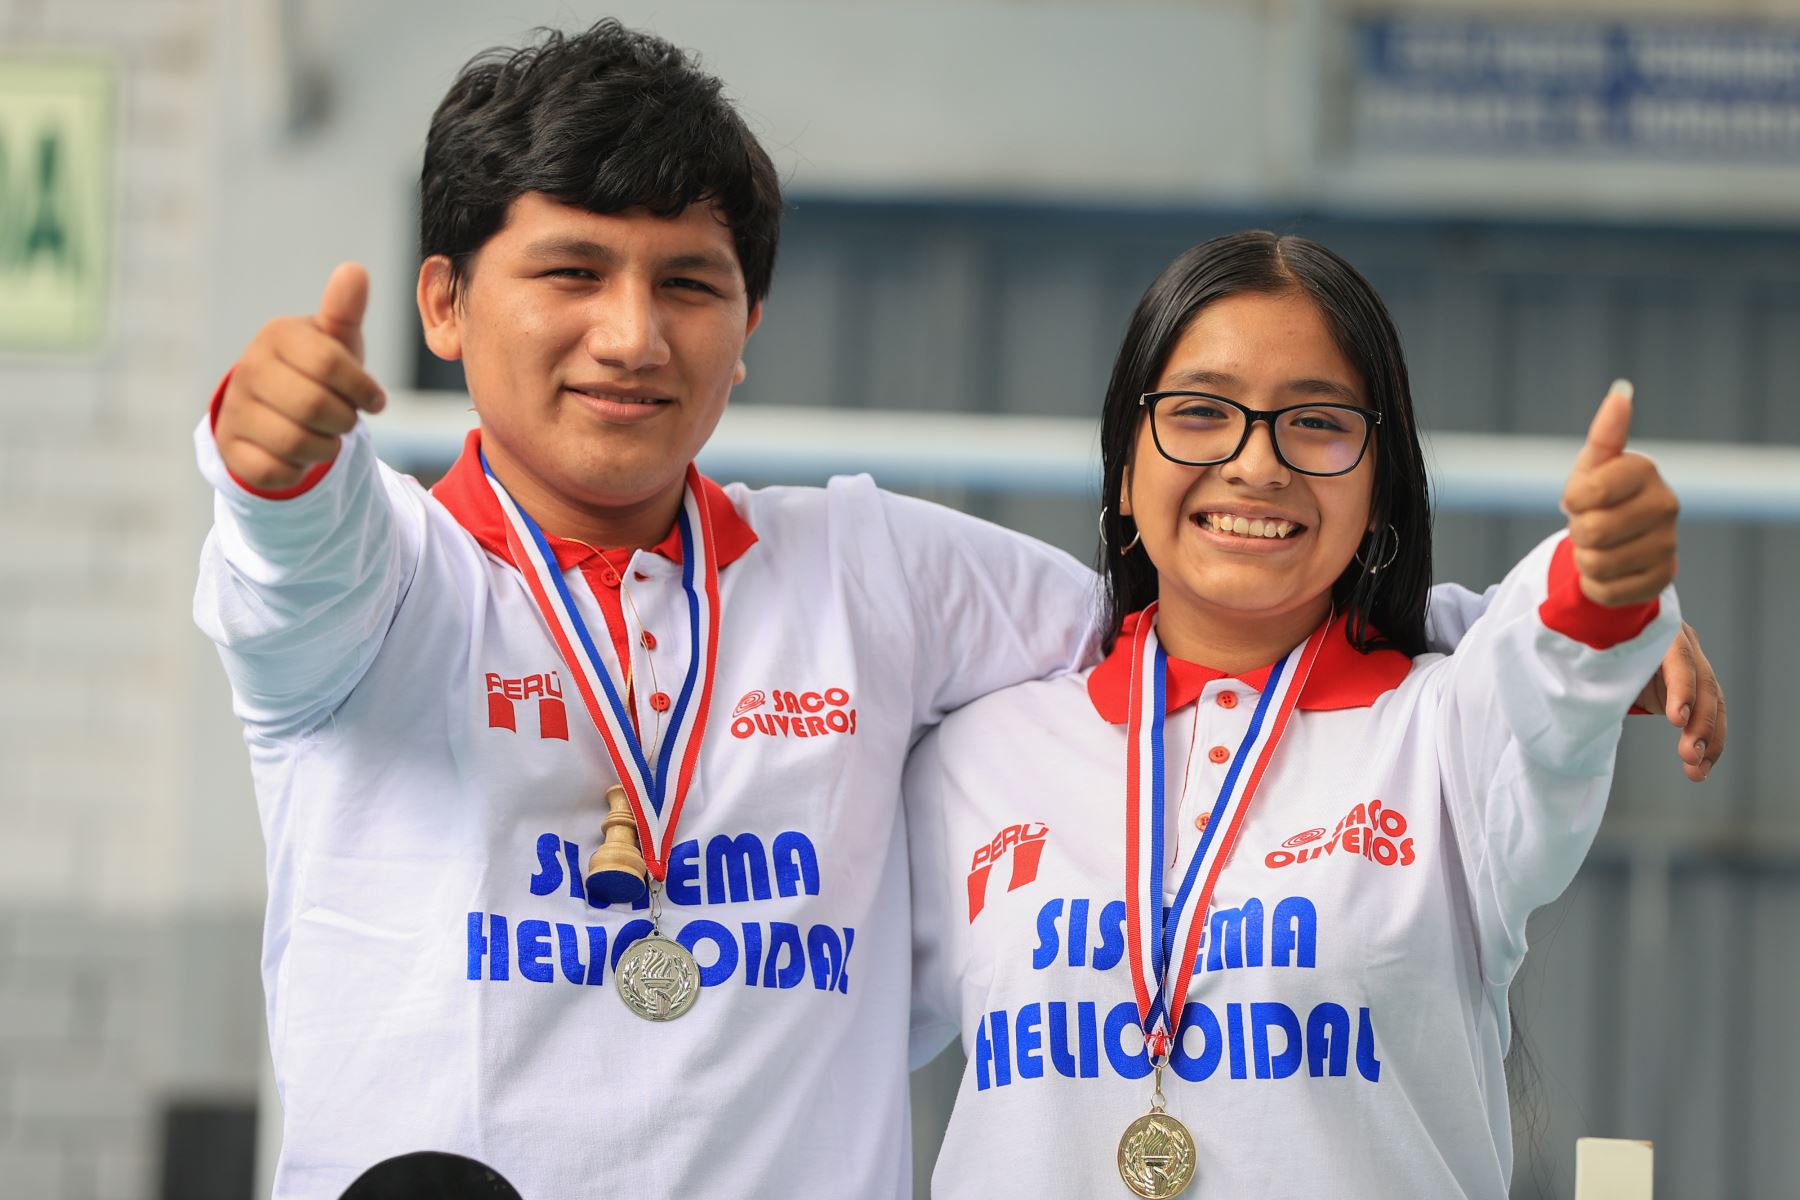 El equipo peruano se coronó campeón mundial escolar de ajedrez en Panamá, tras superar a cerca de 600 ajedrecistas de 36 países. Los mundialistas Henry Vasquéz y Azumi Bravo estudian en el colegio Saco Oliveros, ambos ajedrecistas obtuvieron el oro en sus respectivas categorías. 
Foto: ANDINA/Andrés Valle